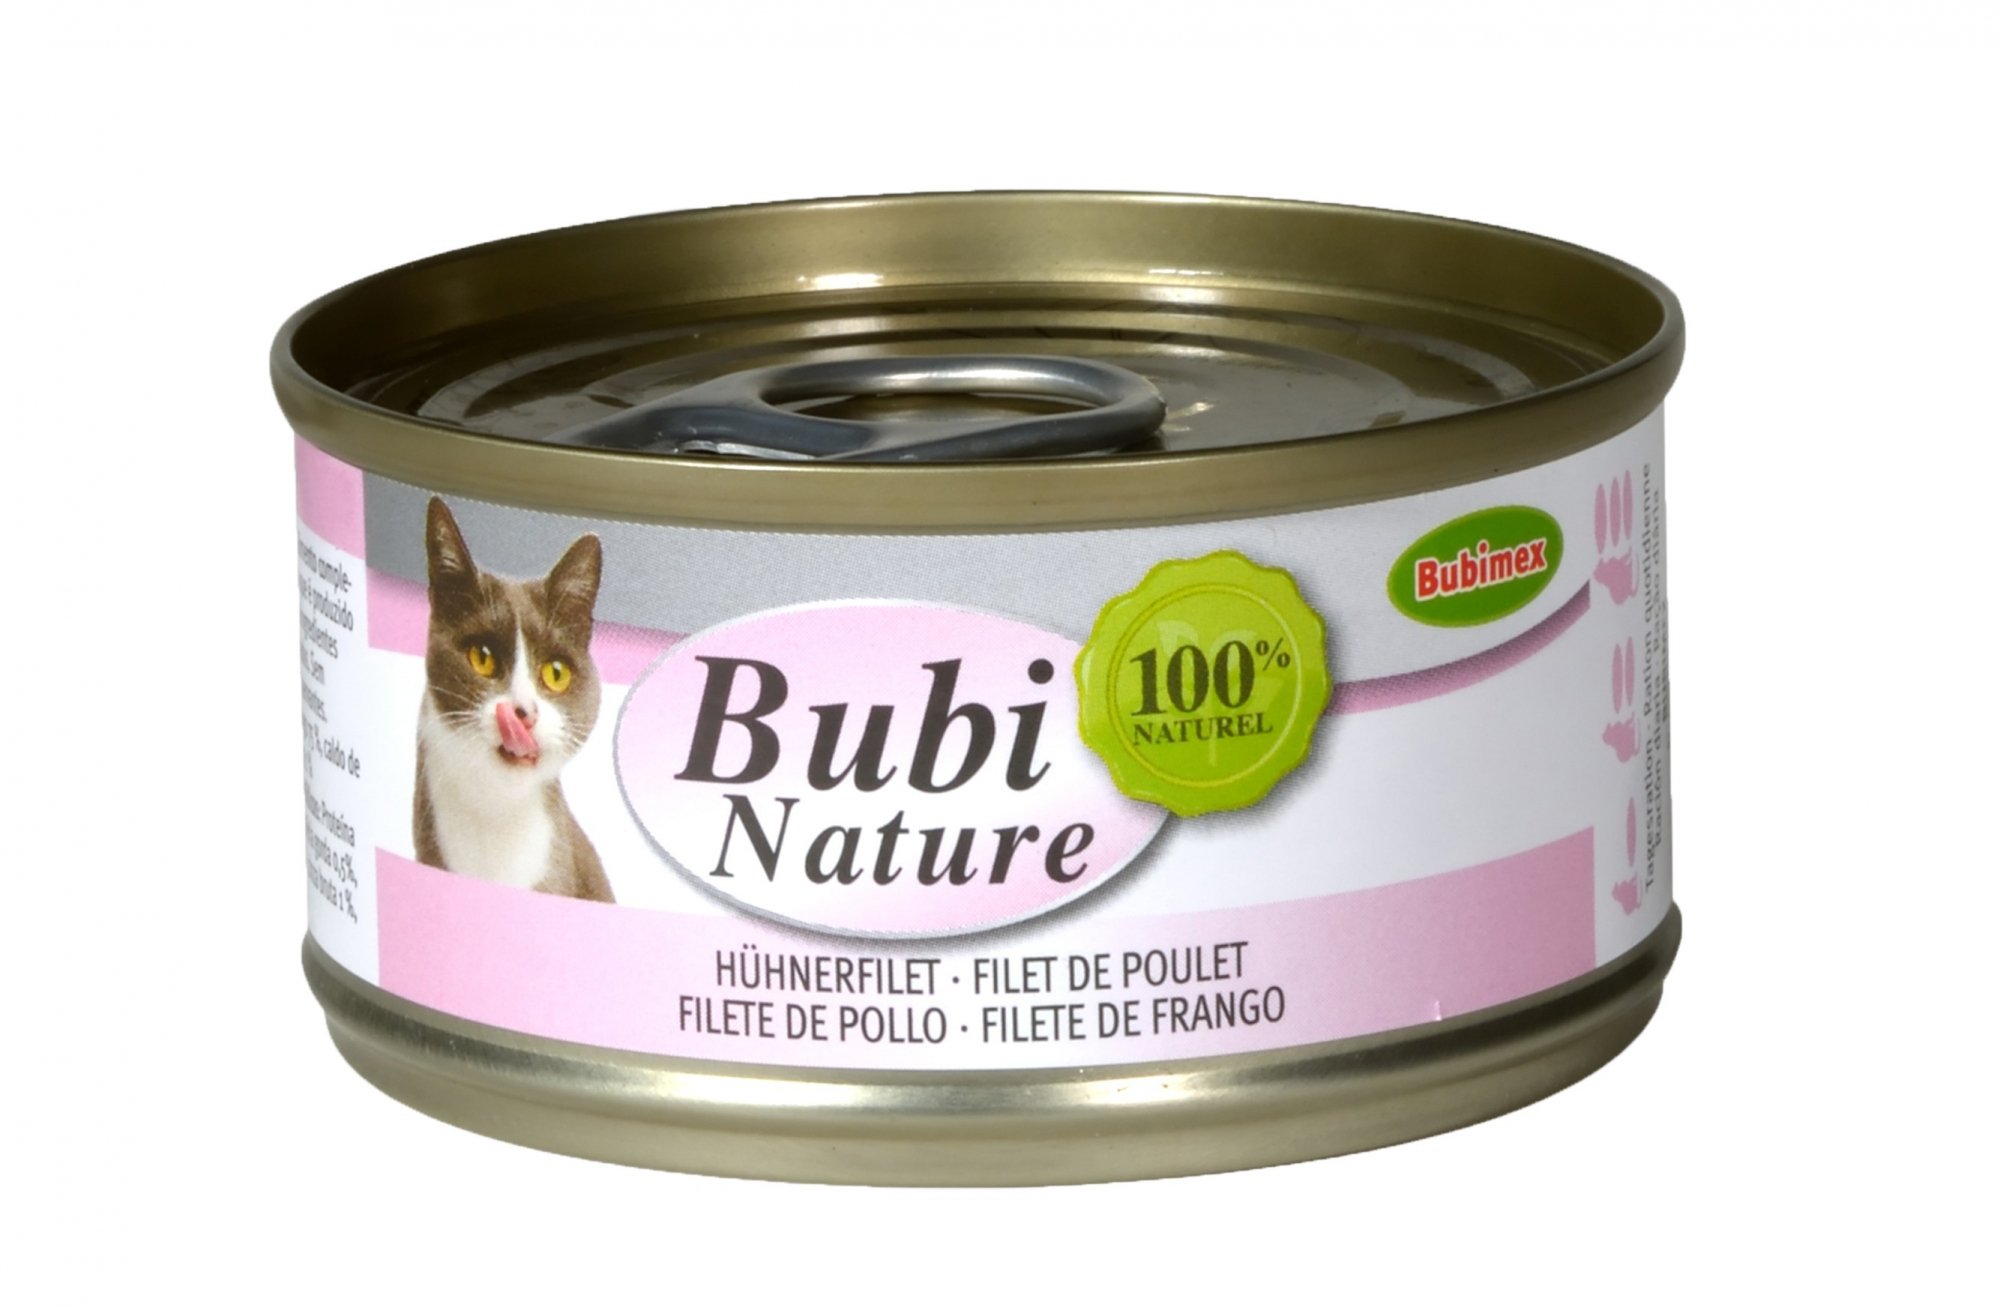 BUBIMEX Bubi Nature Comida húmeda para gatos Filete de pollo 140 g